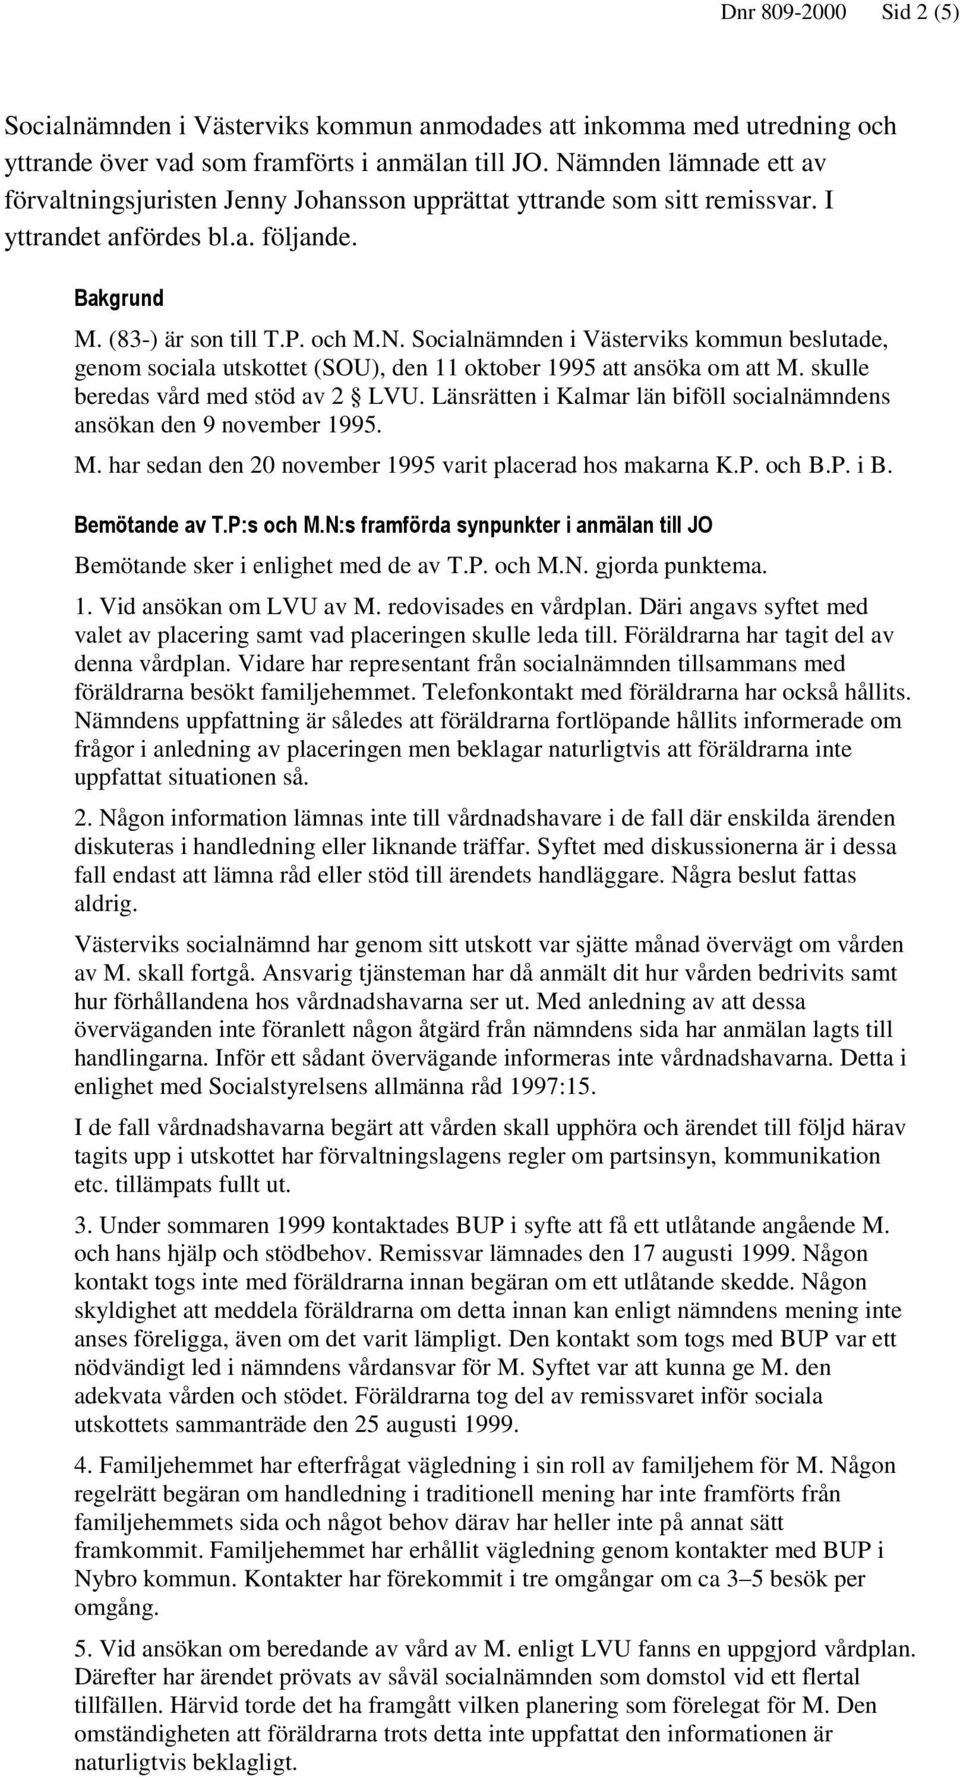 skulle beredas vård med stöd av 2 LVU. Länsrätten i Kalmar län biföll socialnämndens ansökan den 9 november 1995. M. har sedan den 20 november 1995 varit placerad hos makarna K.P. och B.P. i B.